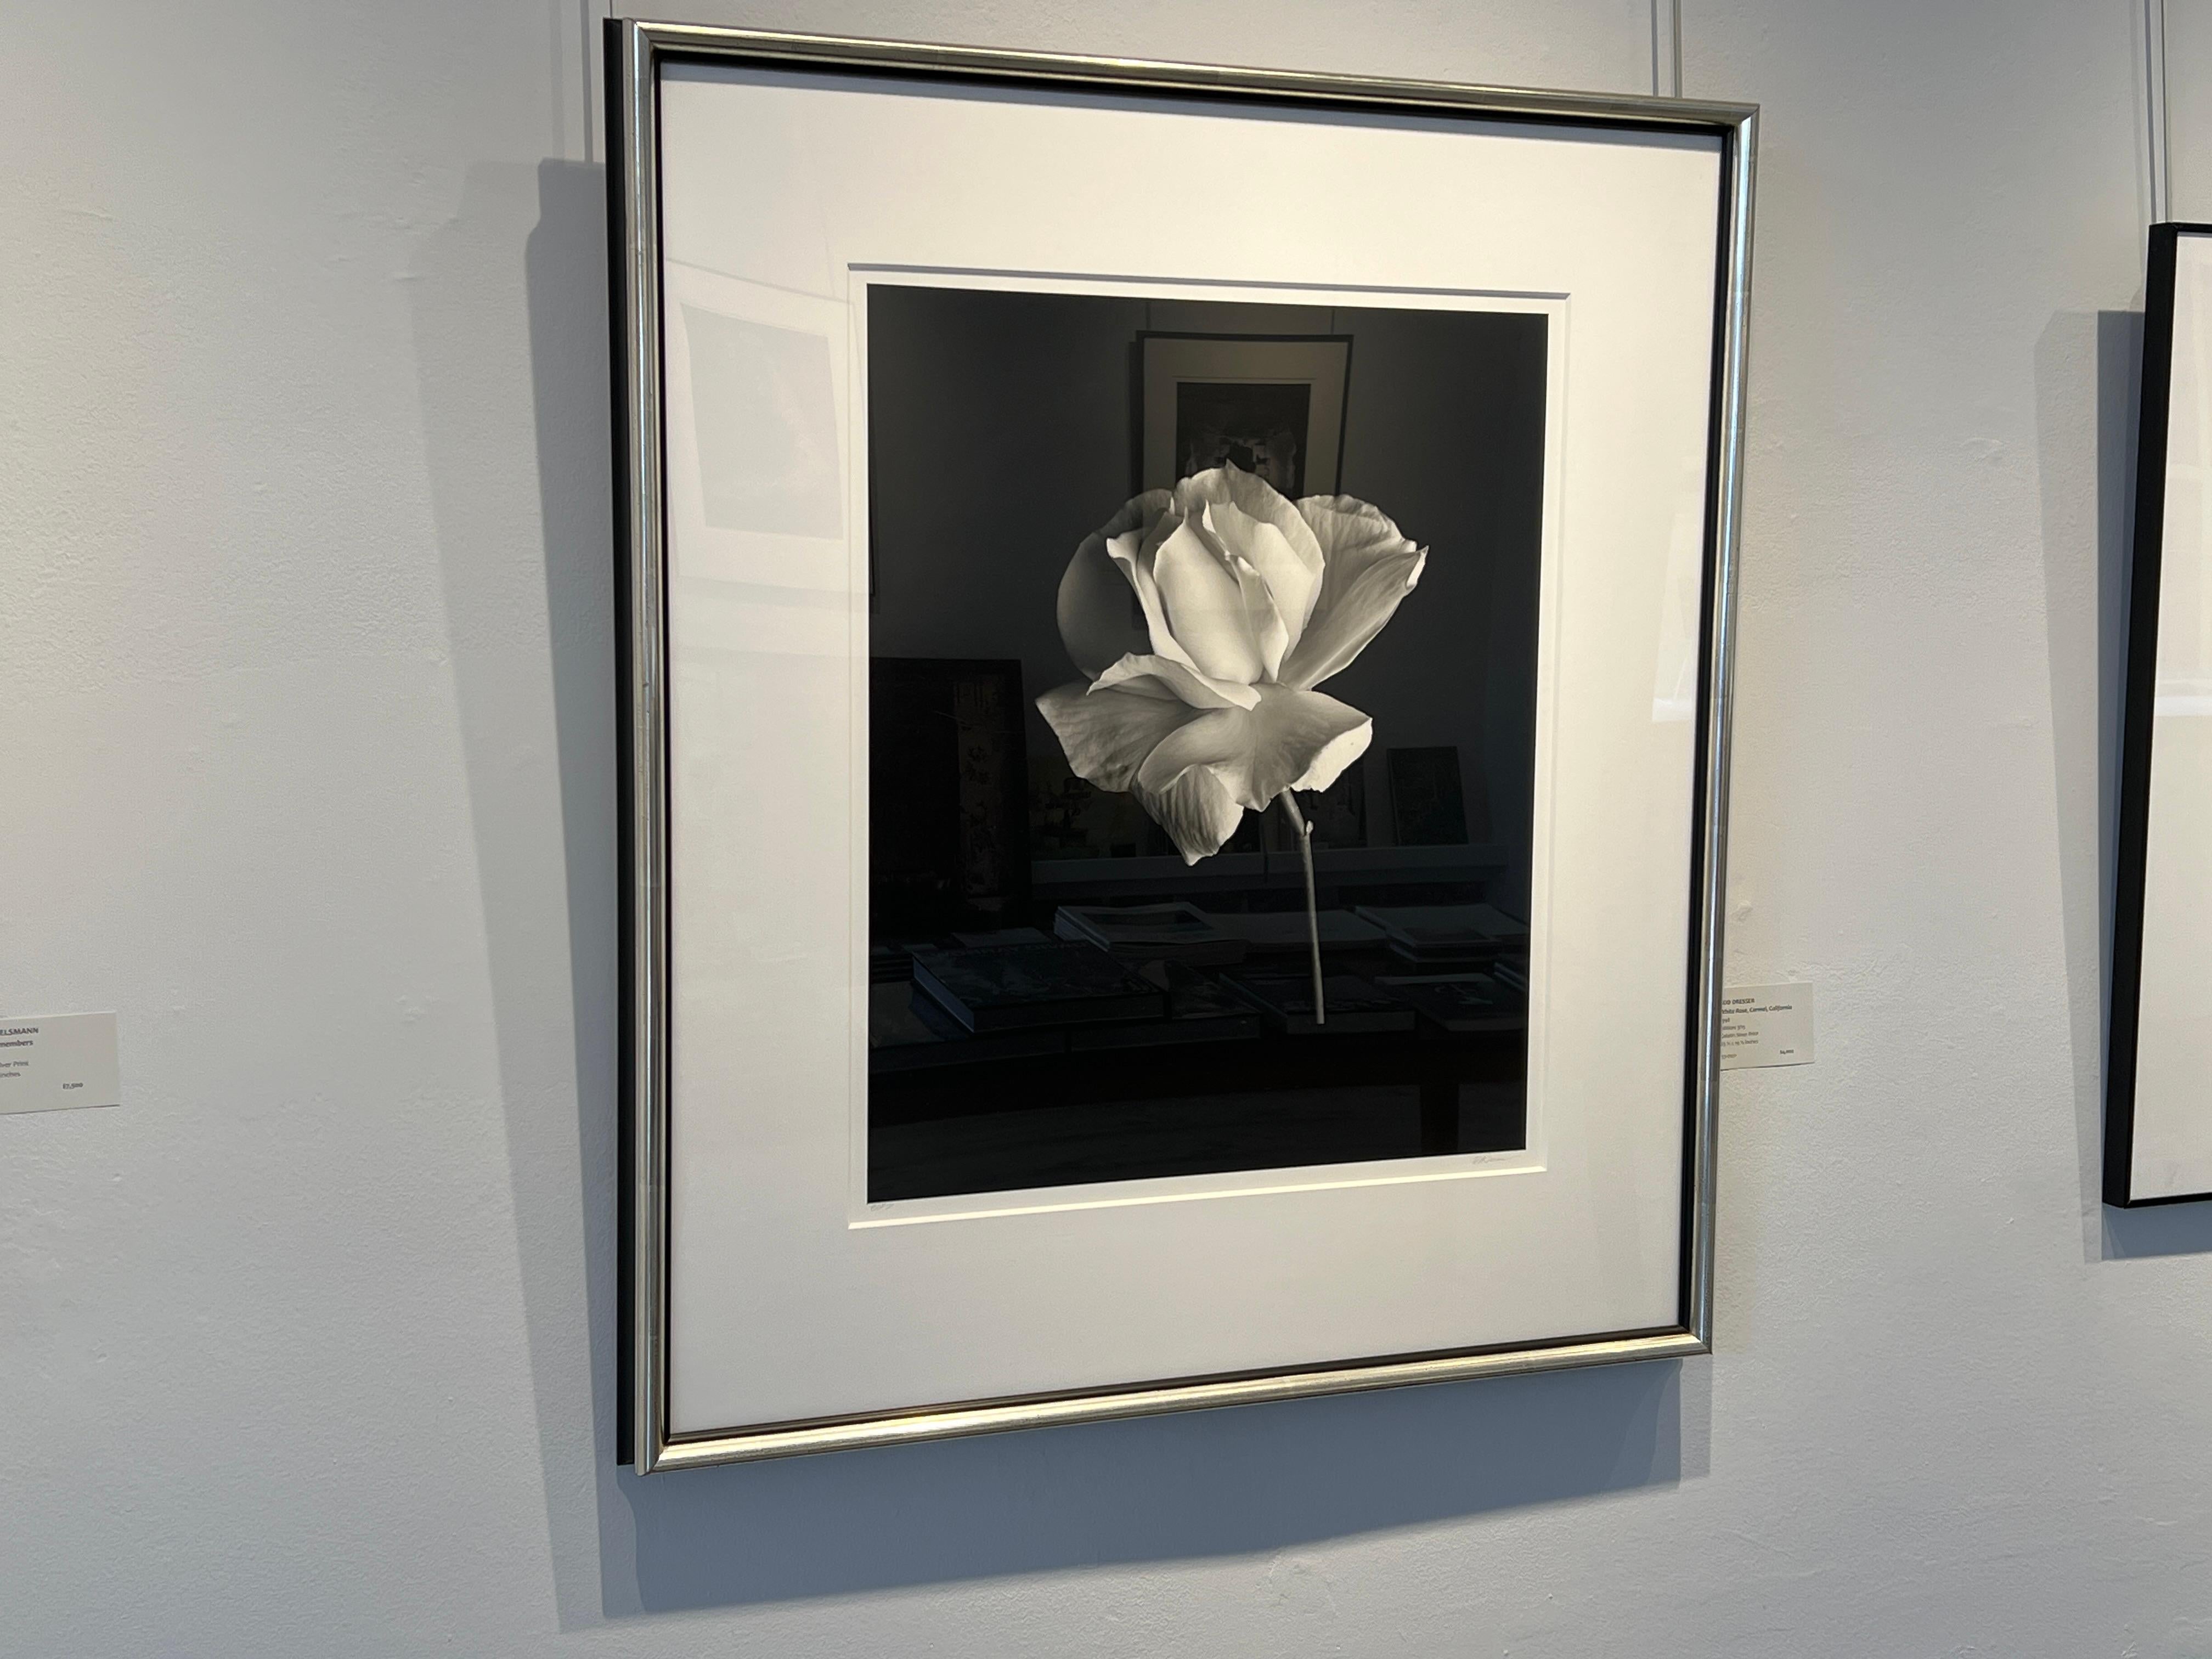 Rod Dresser Black and White Photograph - White Rose, Carmel